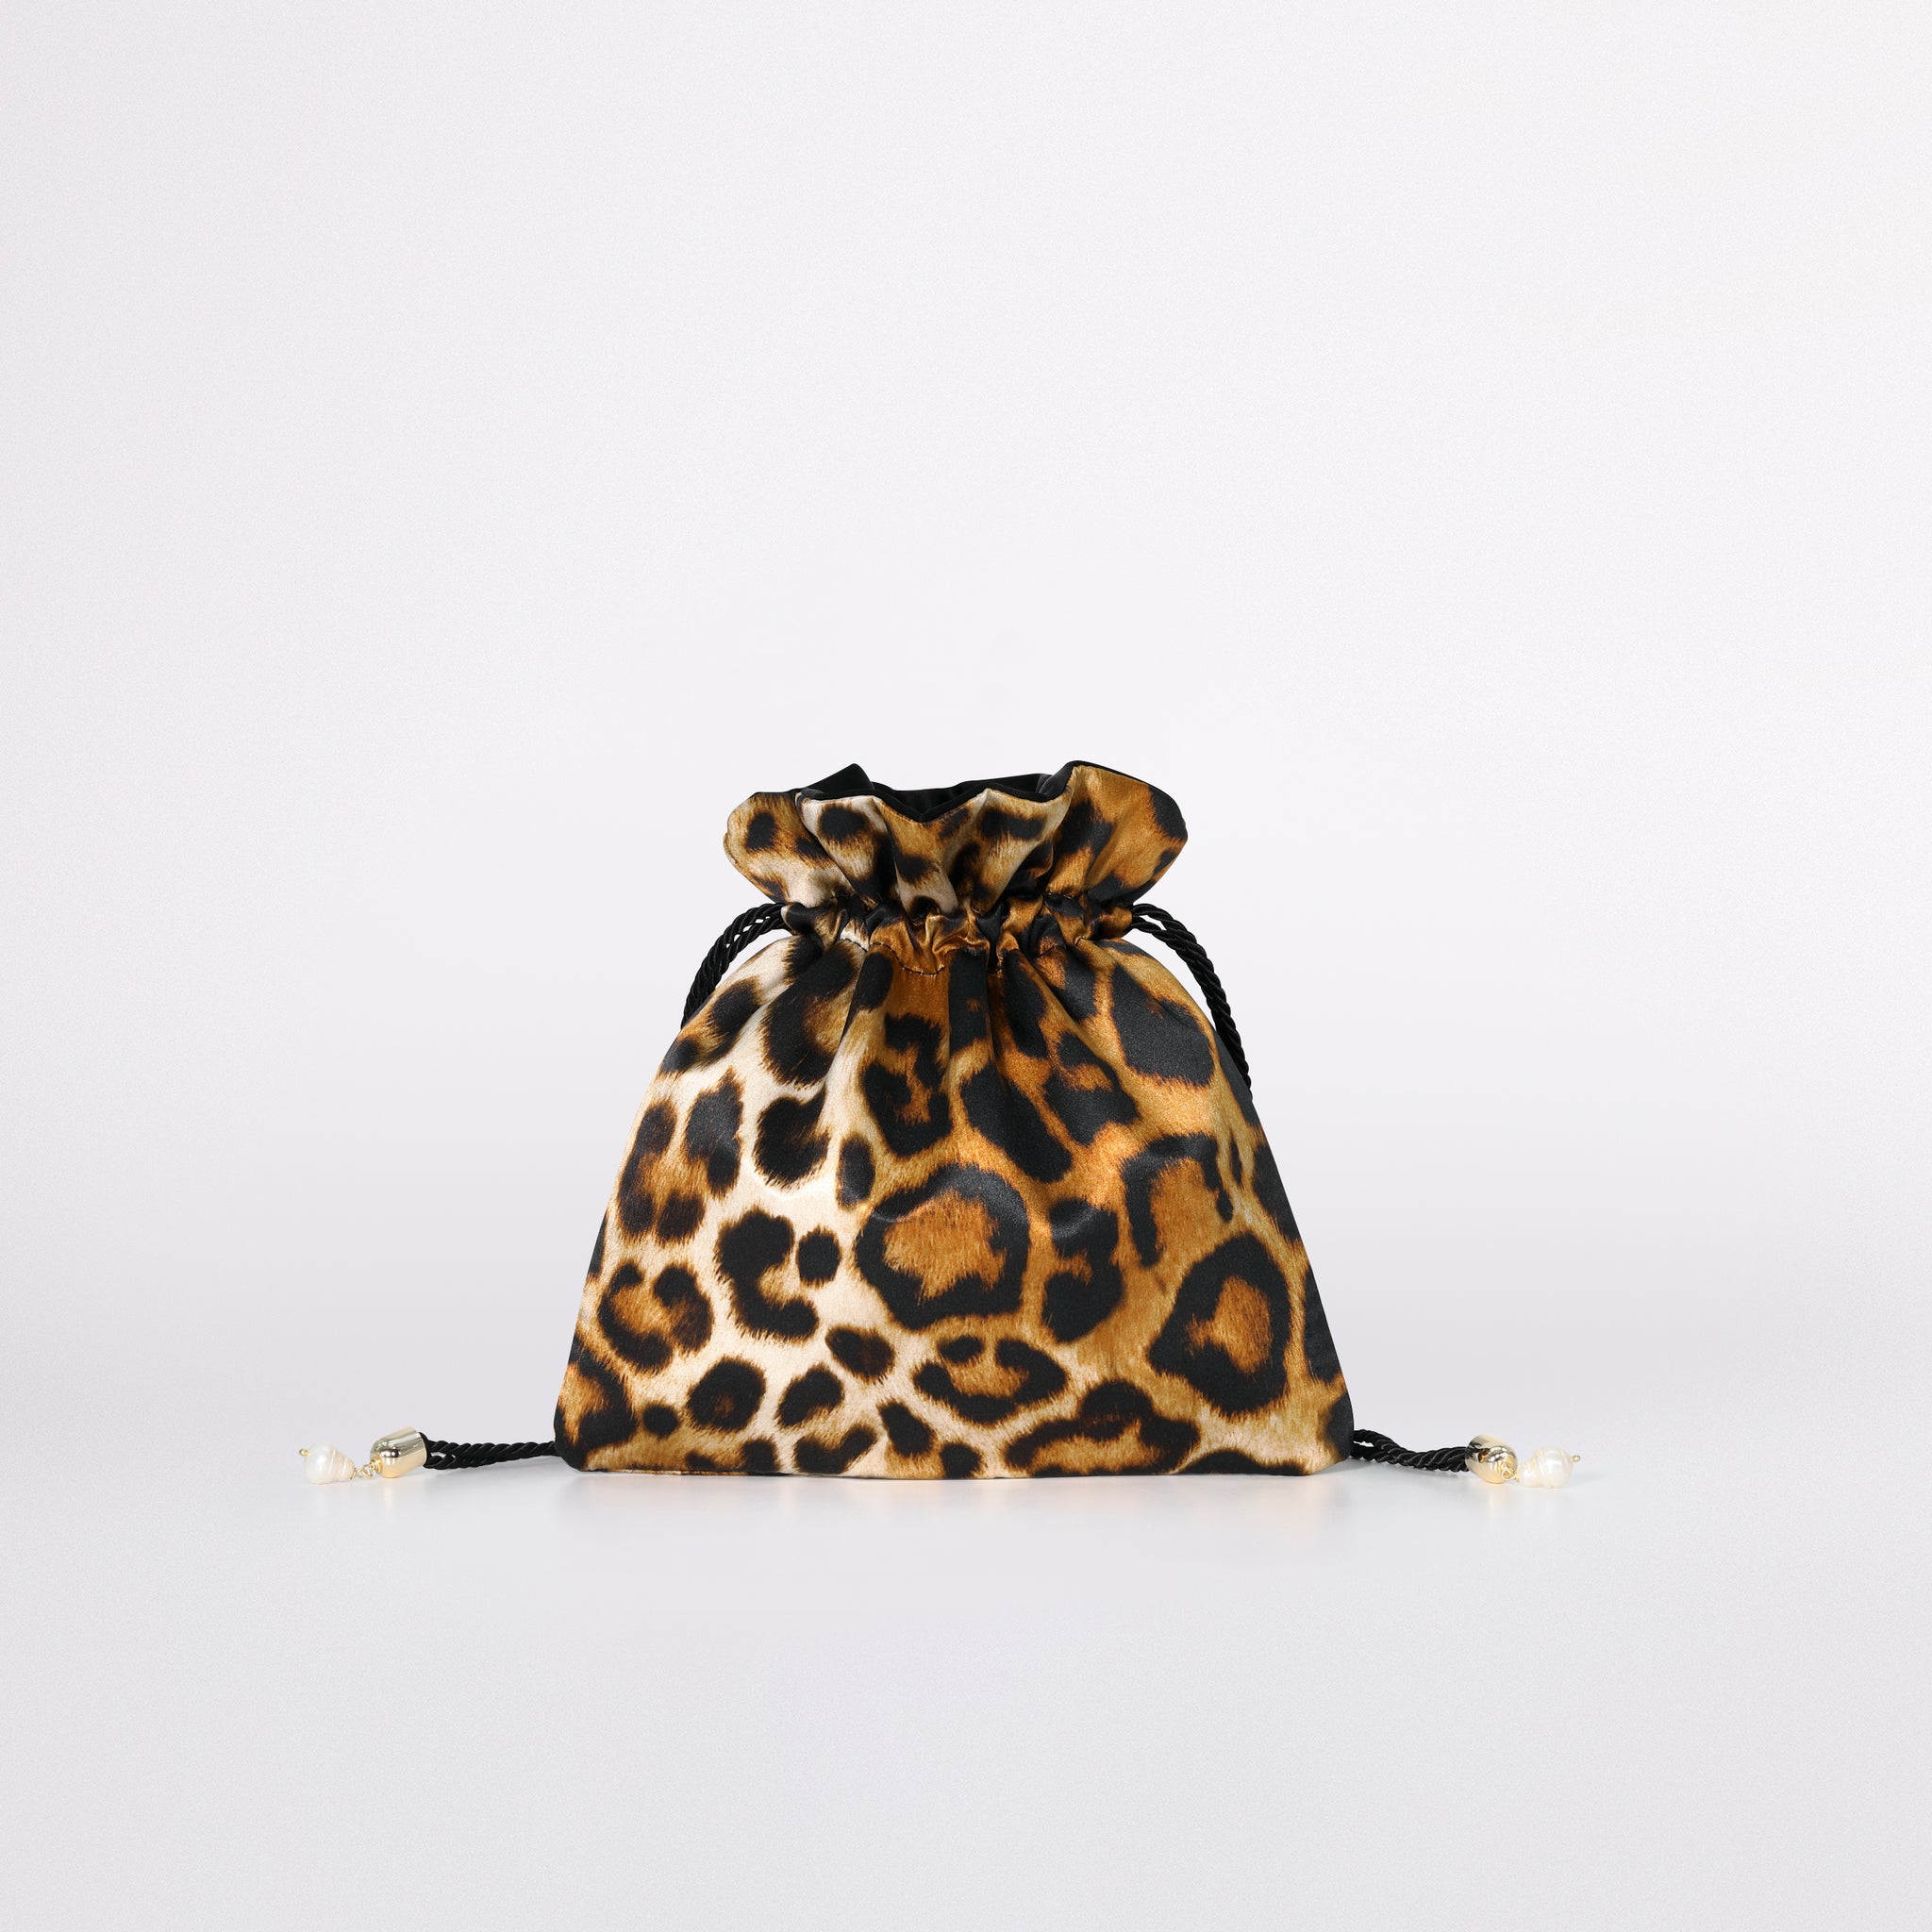 La Leopard Silk in versione mini